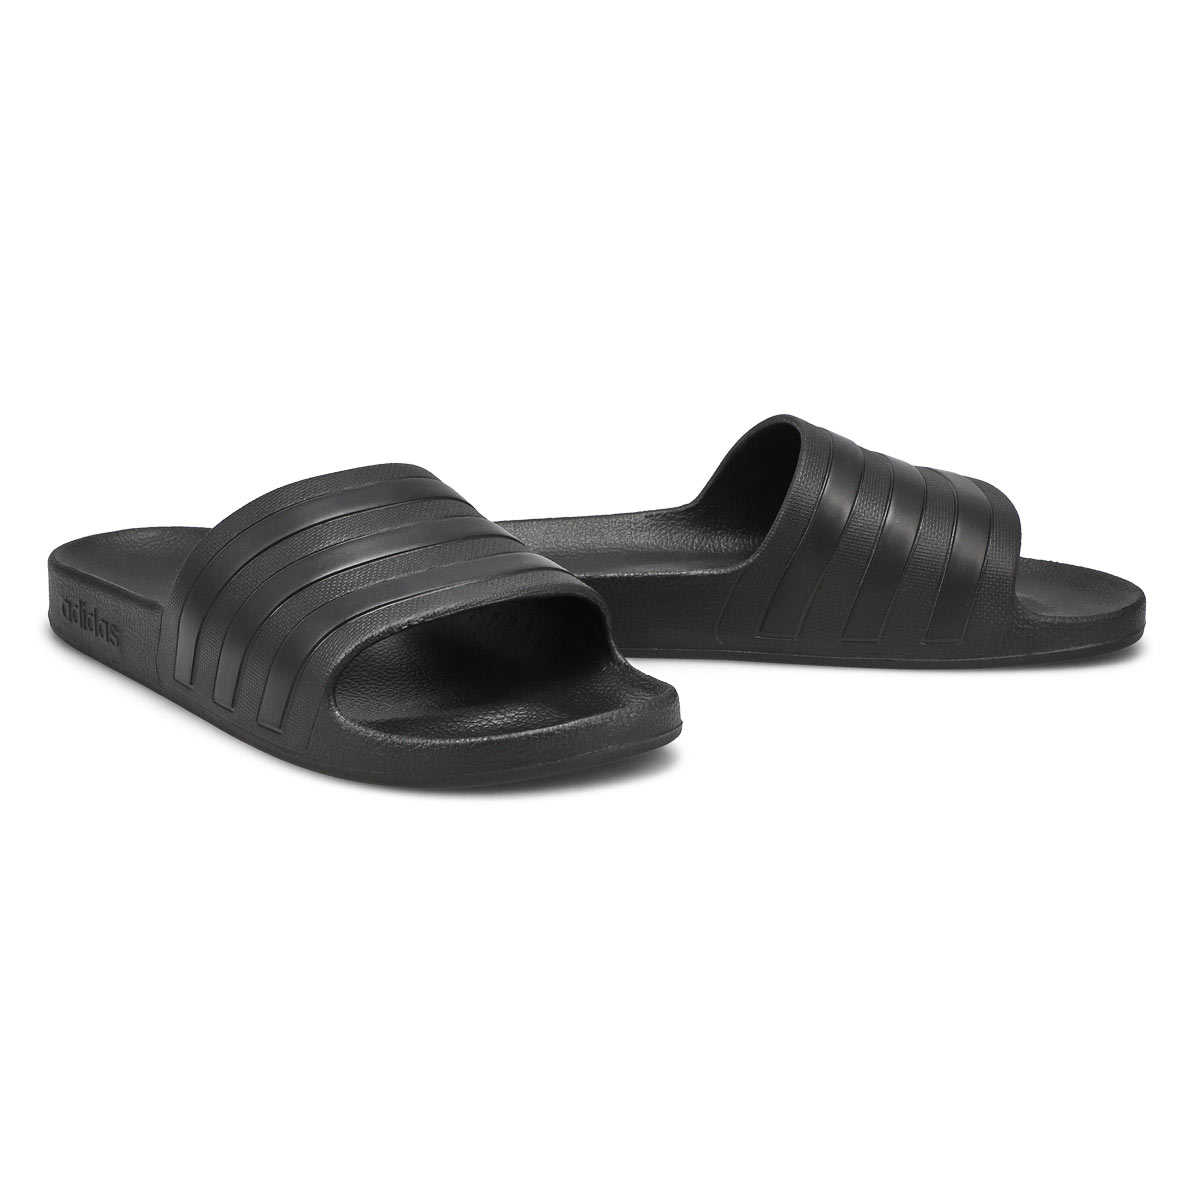 Women's Adilette Aqua Slide Sandal - Black/Black